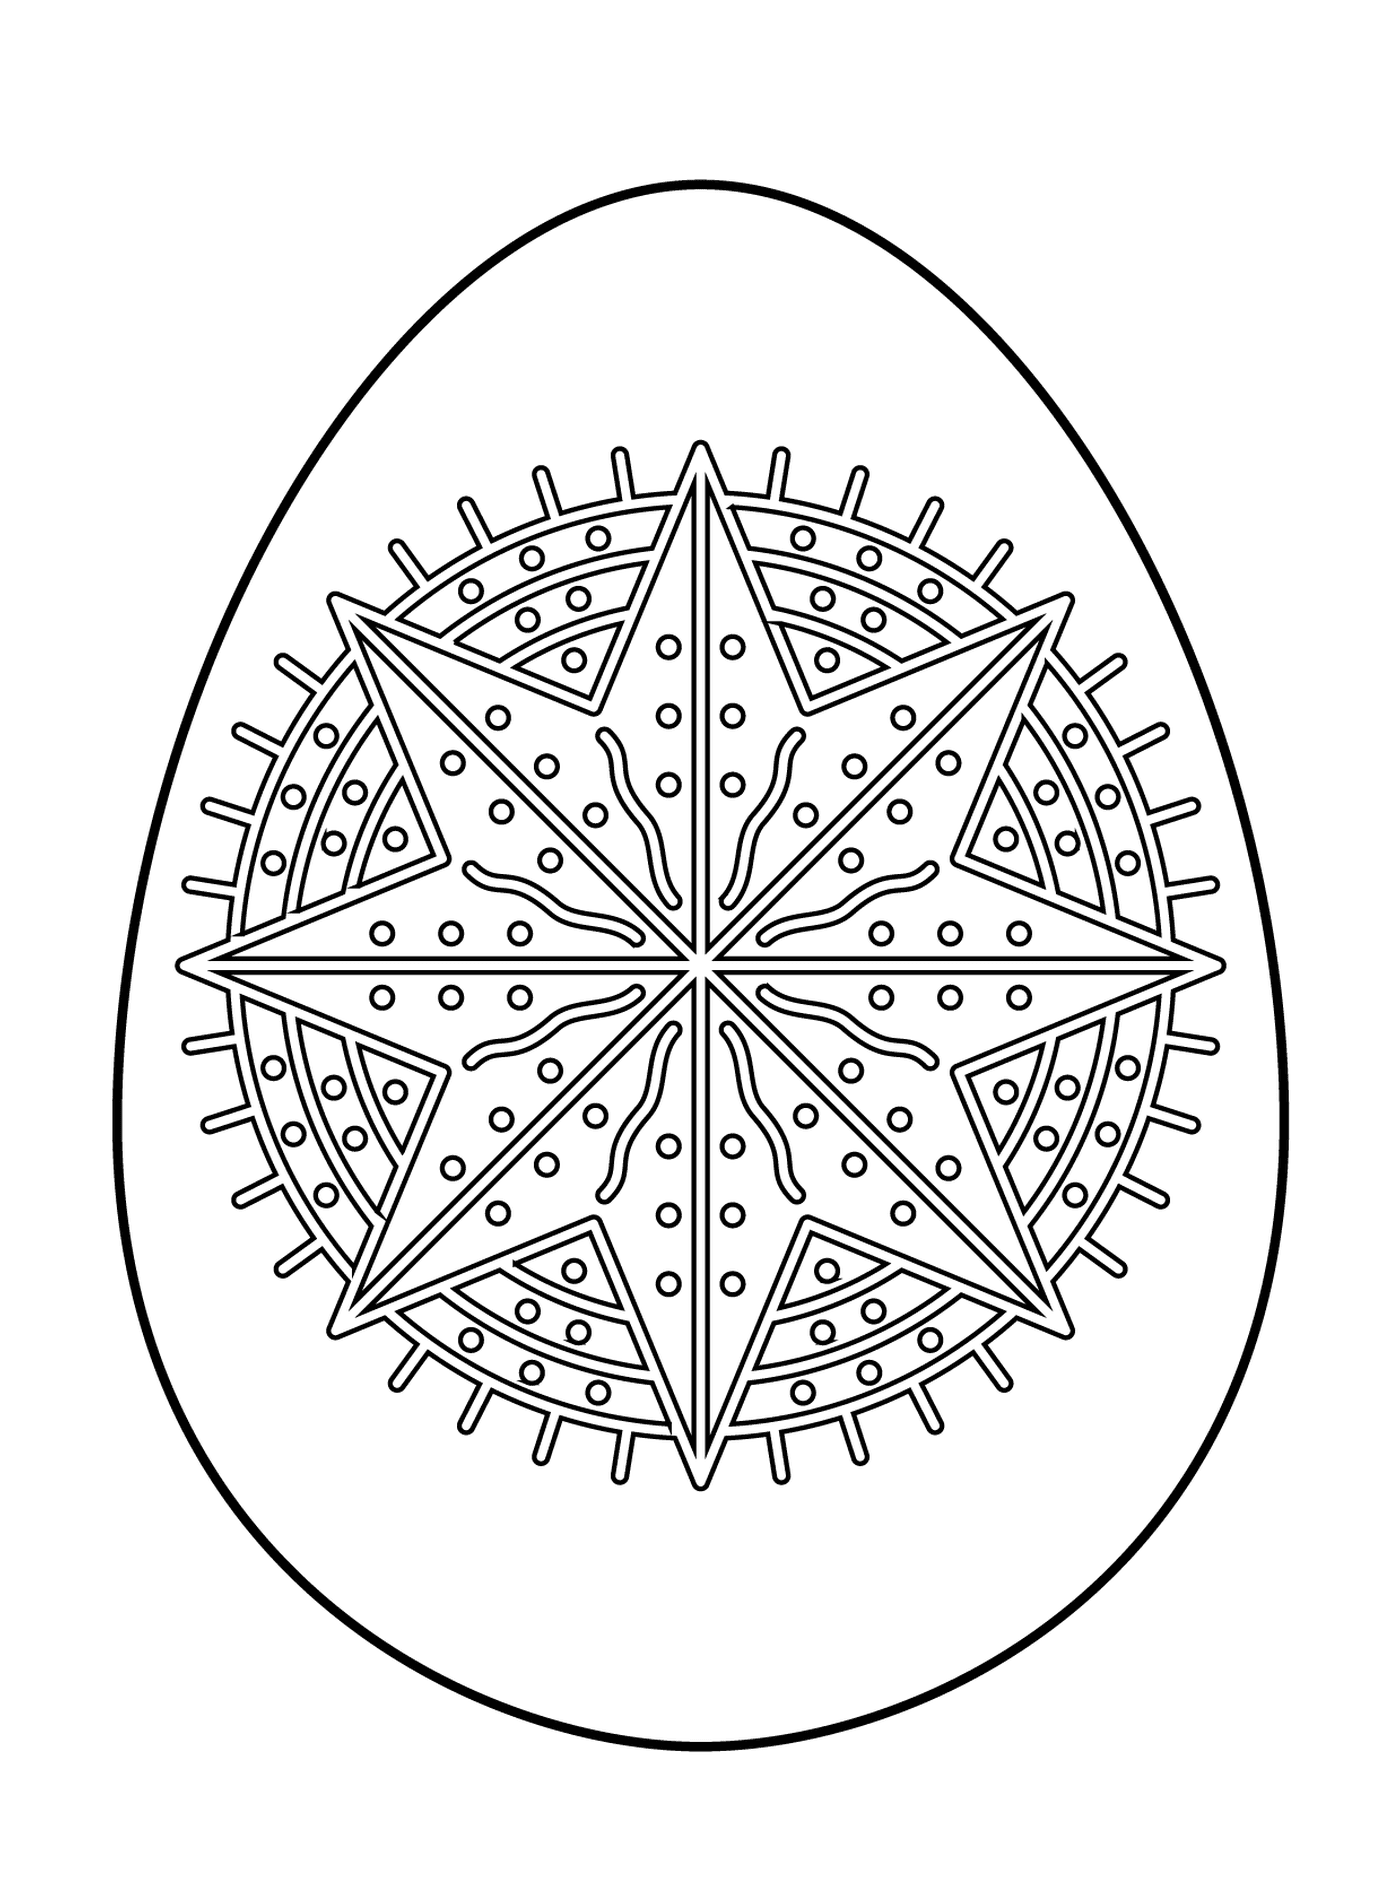  Ovo de Páscoa com padrão estrela octagrama 